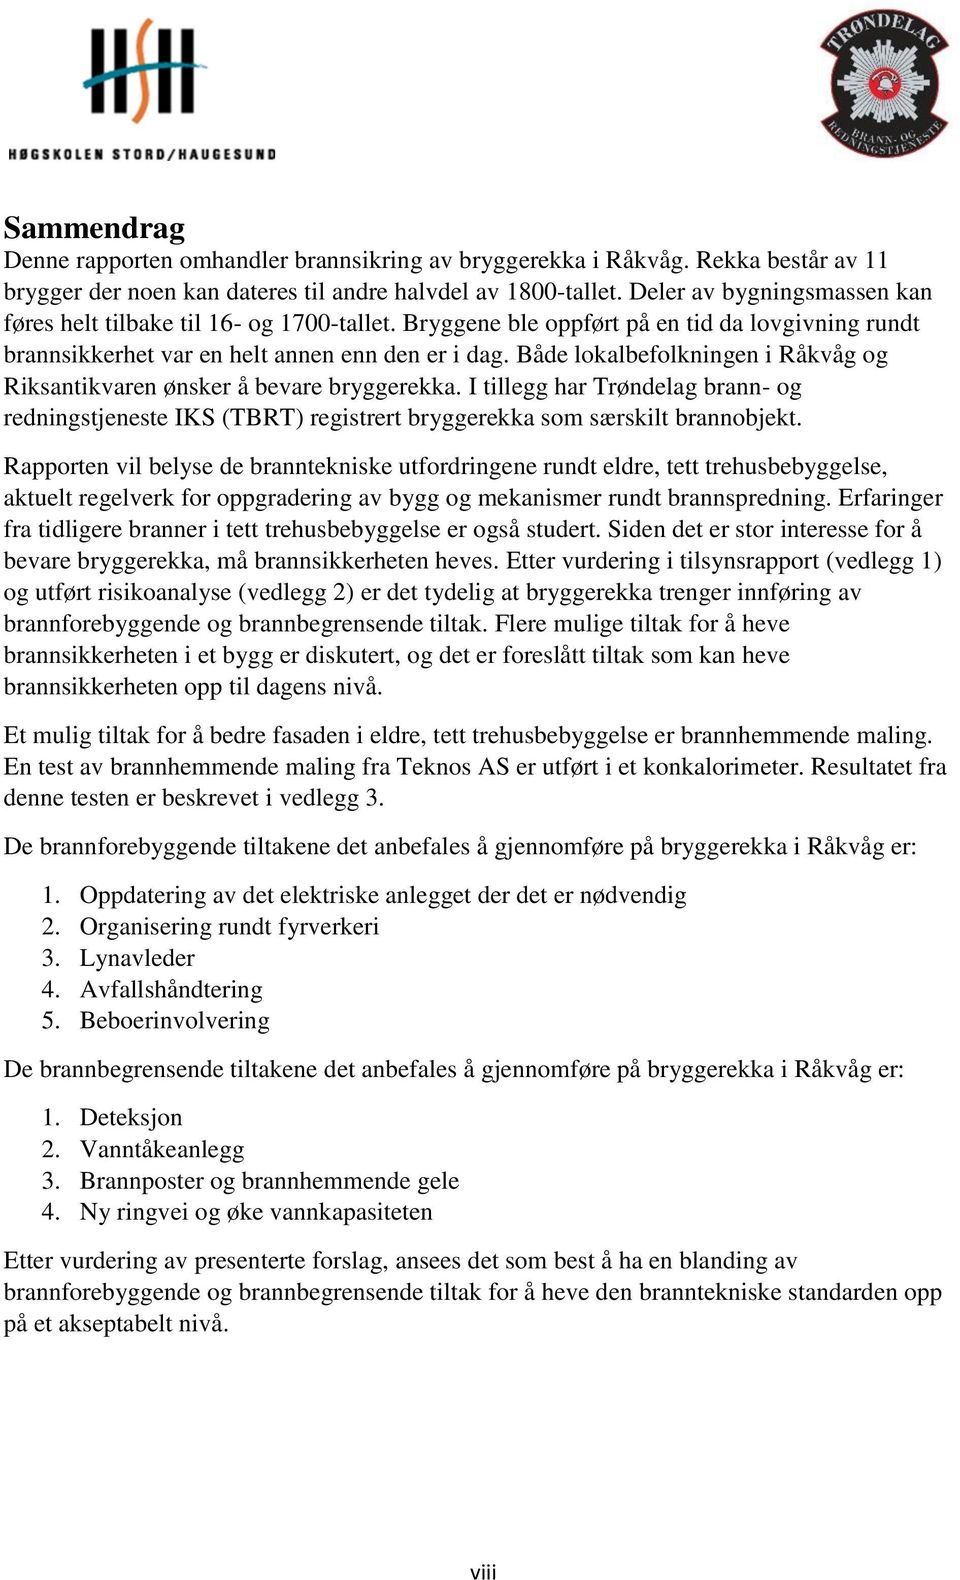 Både lokalbefolkningen i Råkvåg og Riksantikvaren ønsker å bevare bryggerekka. I tillegg har Trøndelag brann- og redningstjeneste IKS (TBRT) registrert bryggerekka som særskilt brannobjekt.